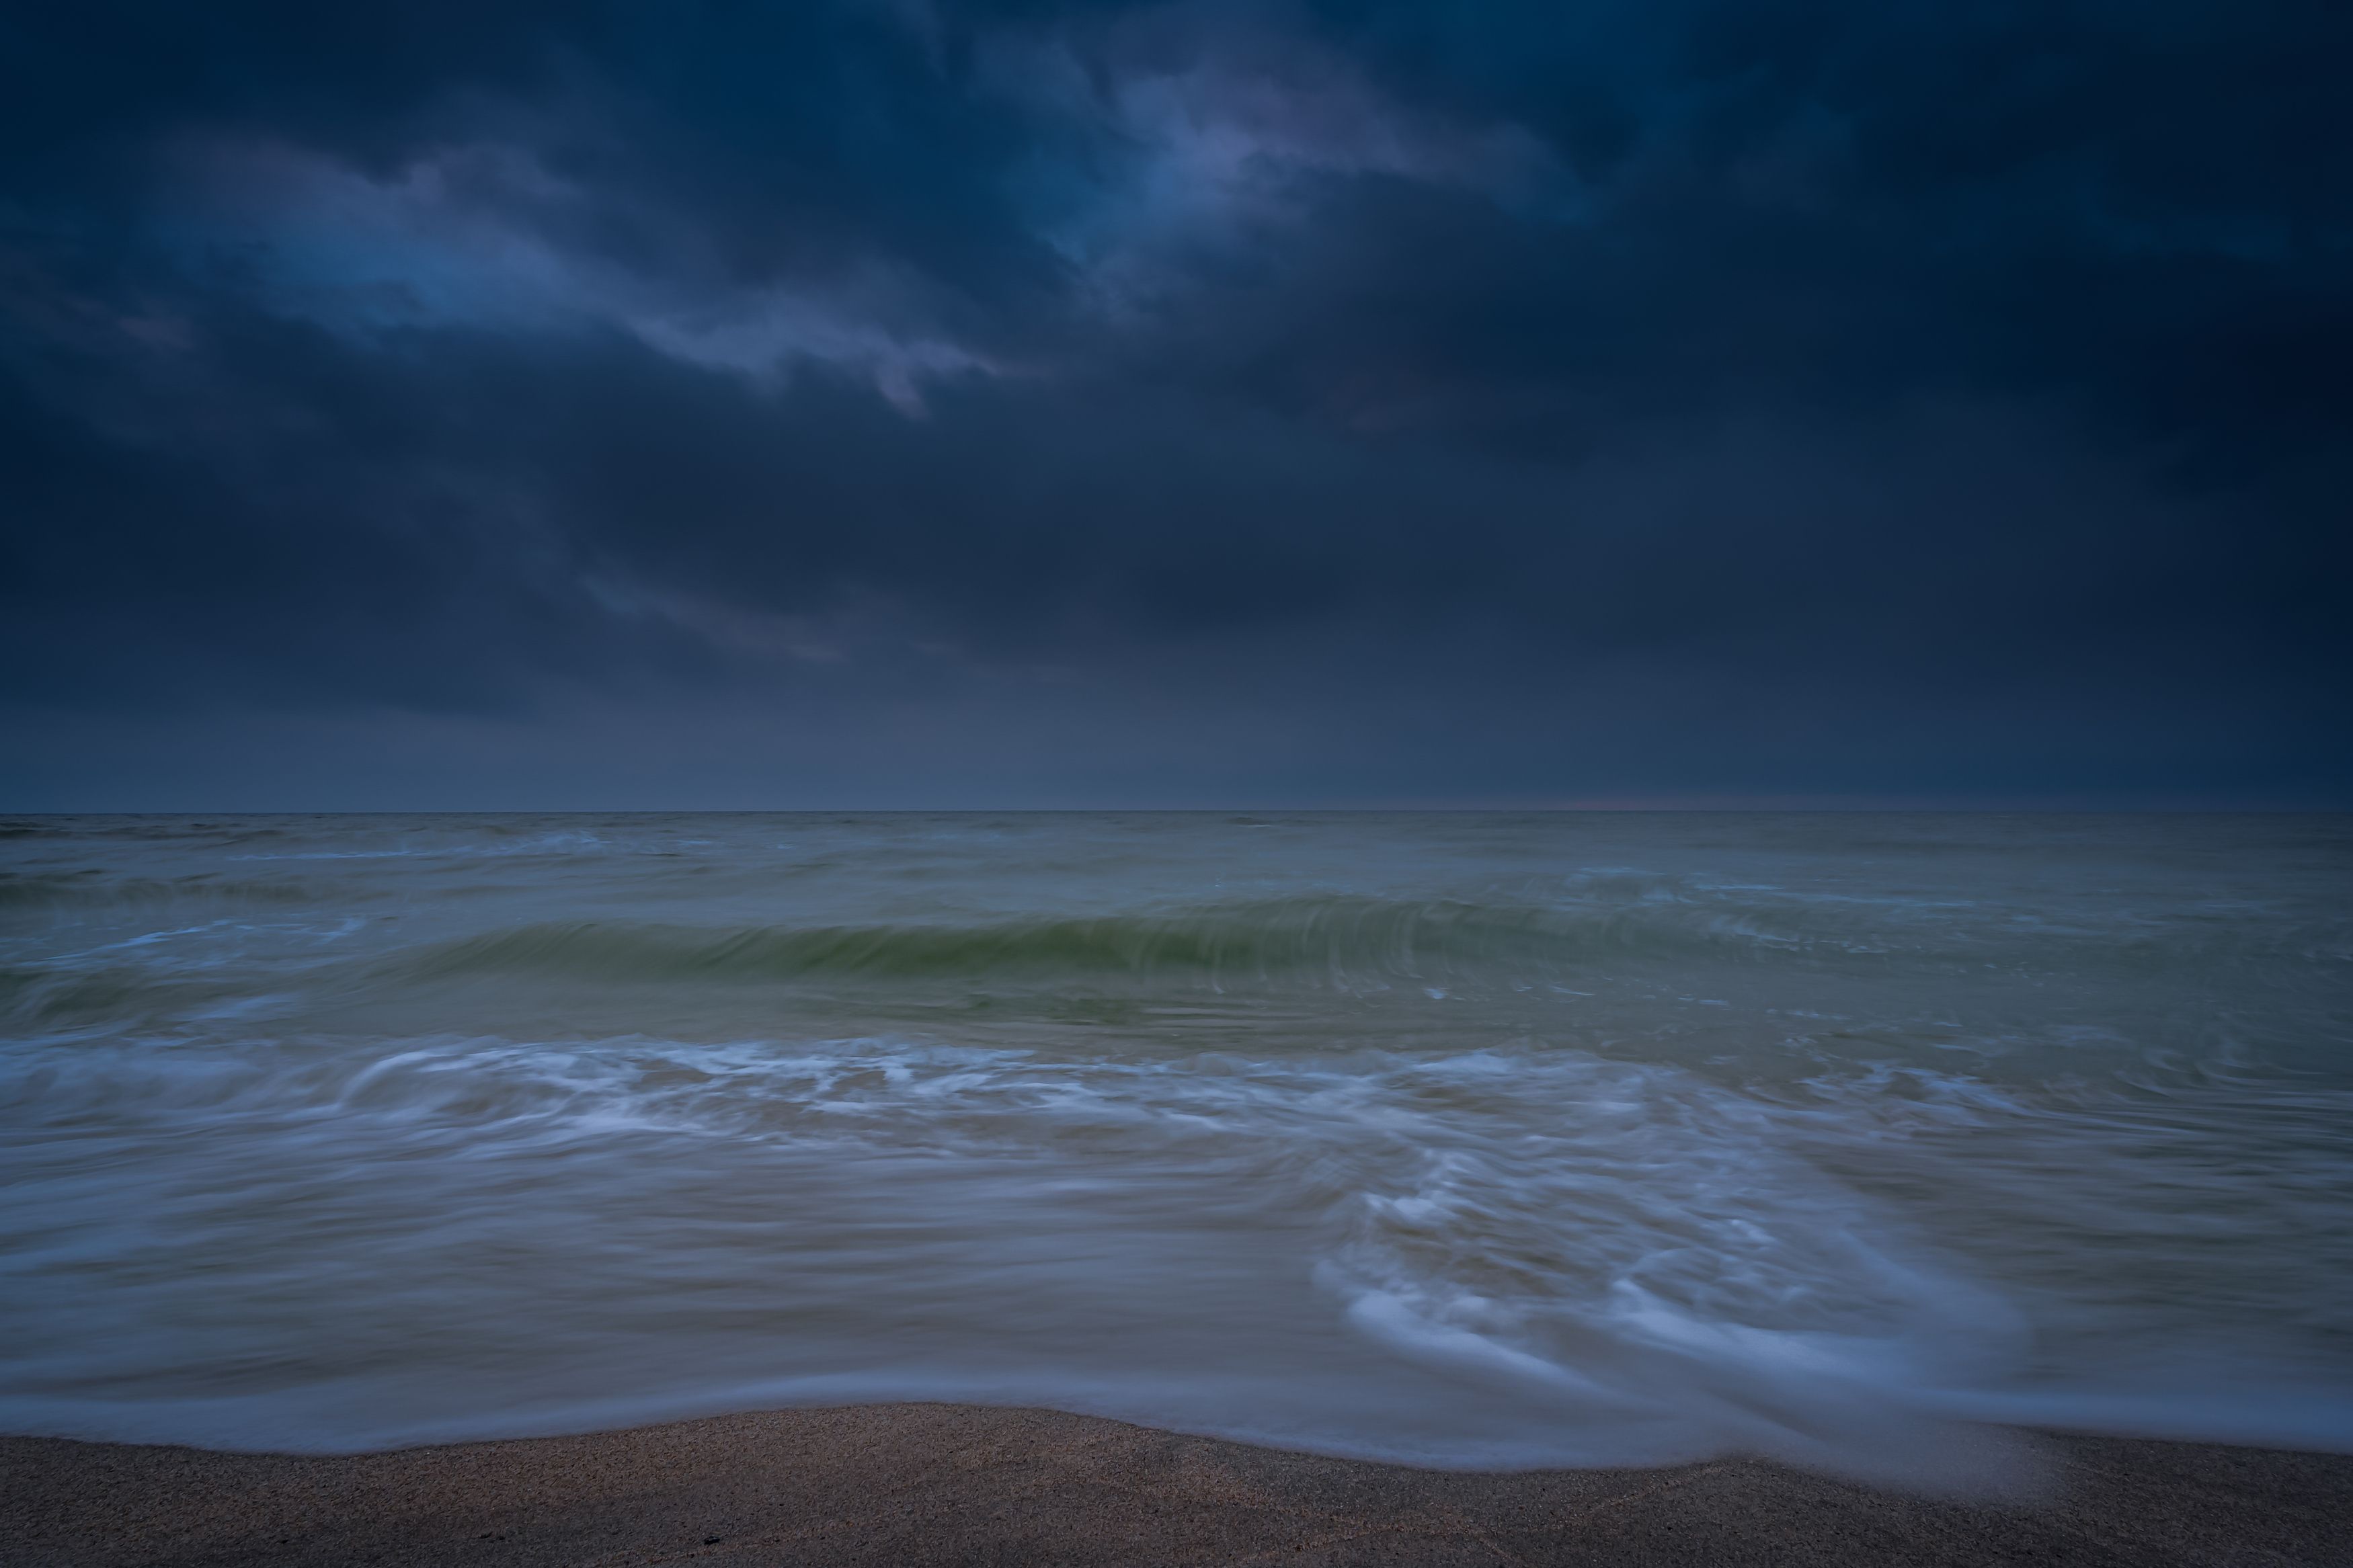 балтийское море, ночь,шторм, Popoff Dmitry